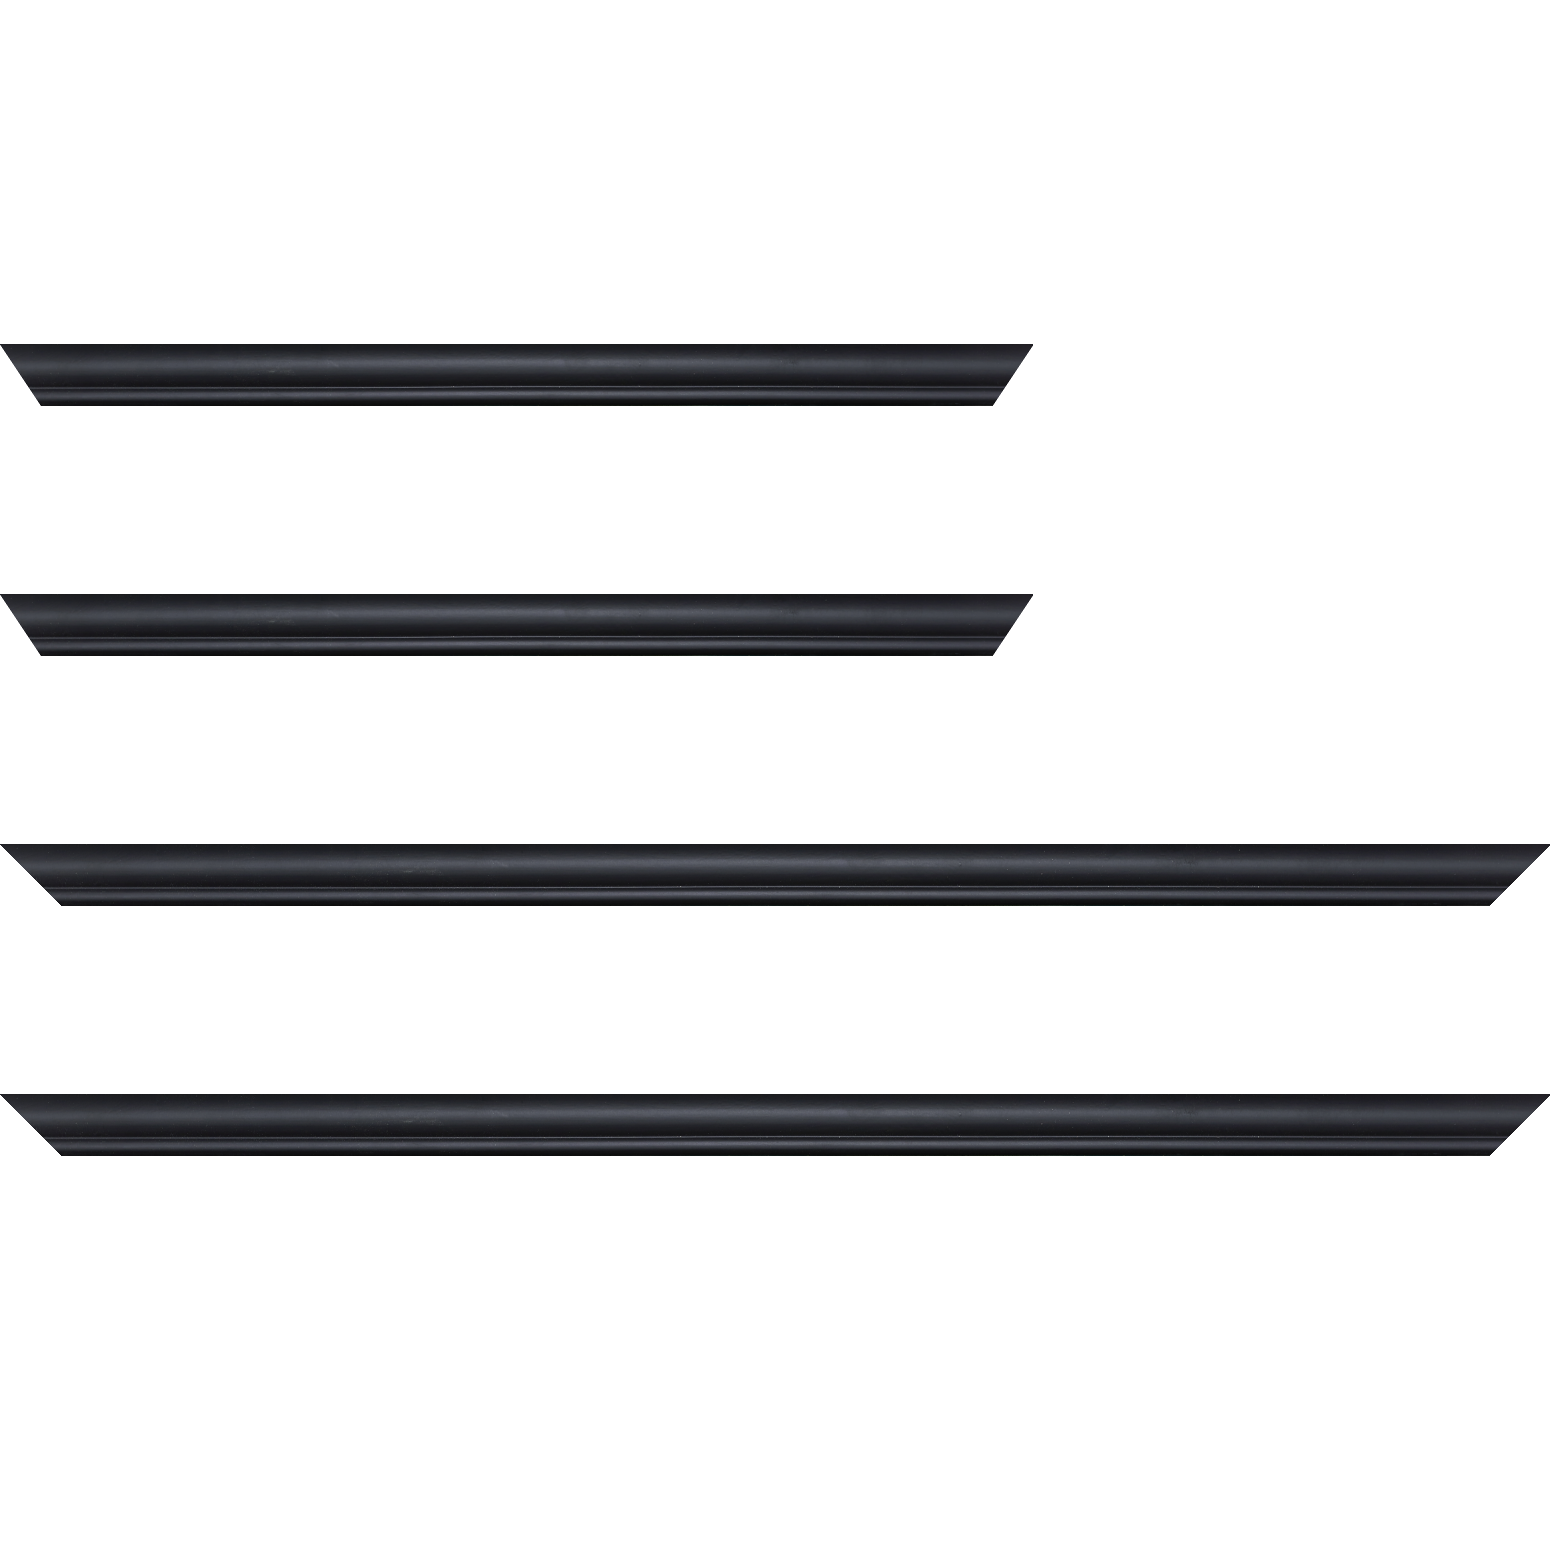 Baguette bois profil arrondi largeur 2.1cm couleur noir mat filet noir